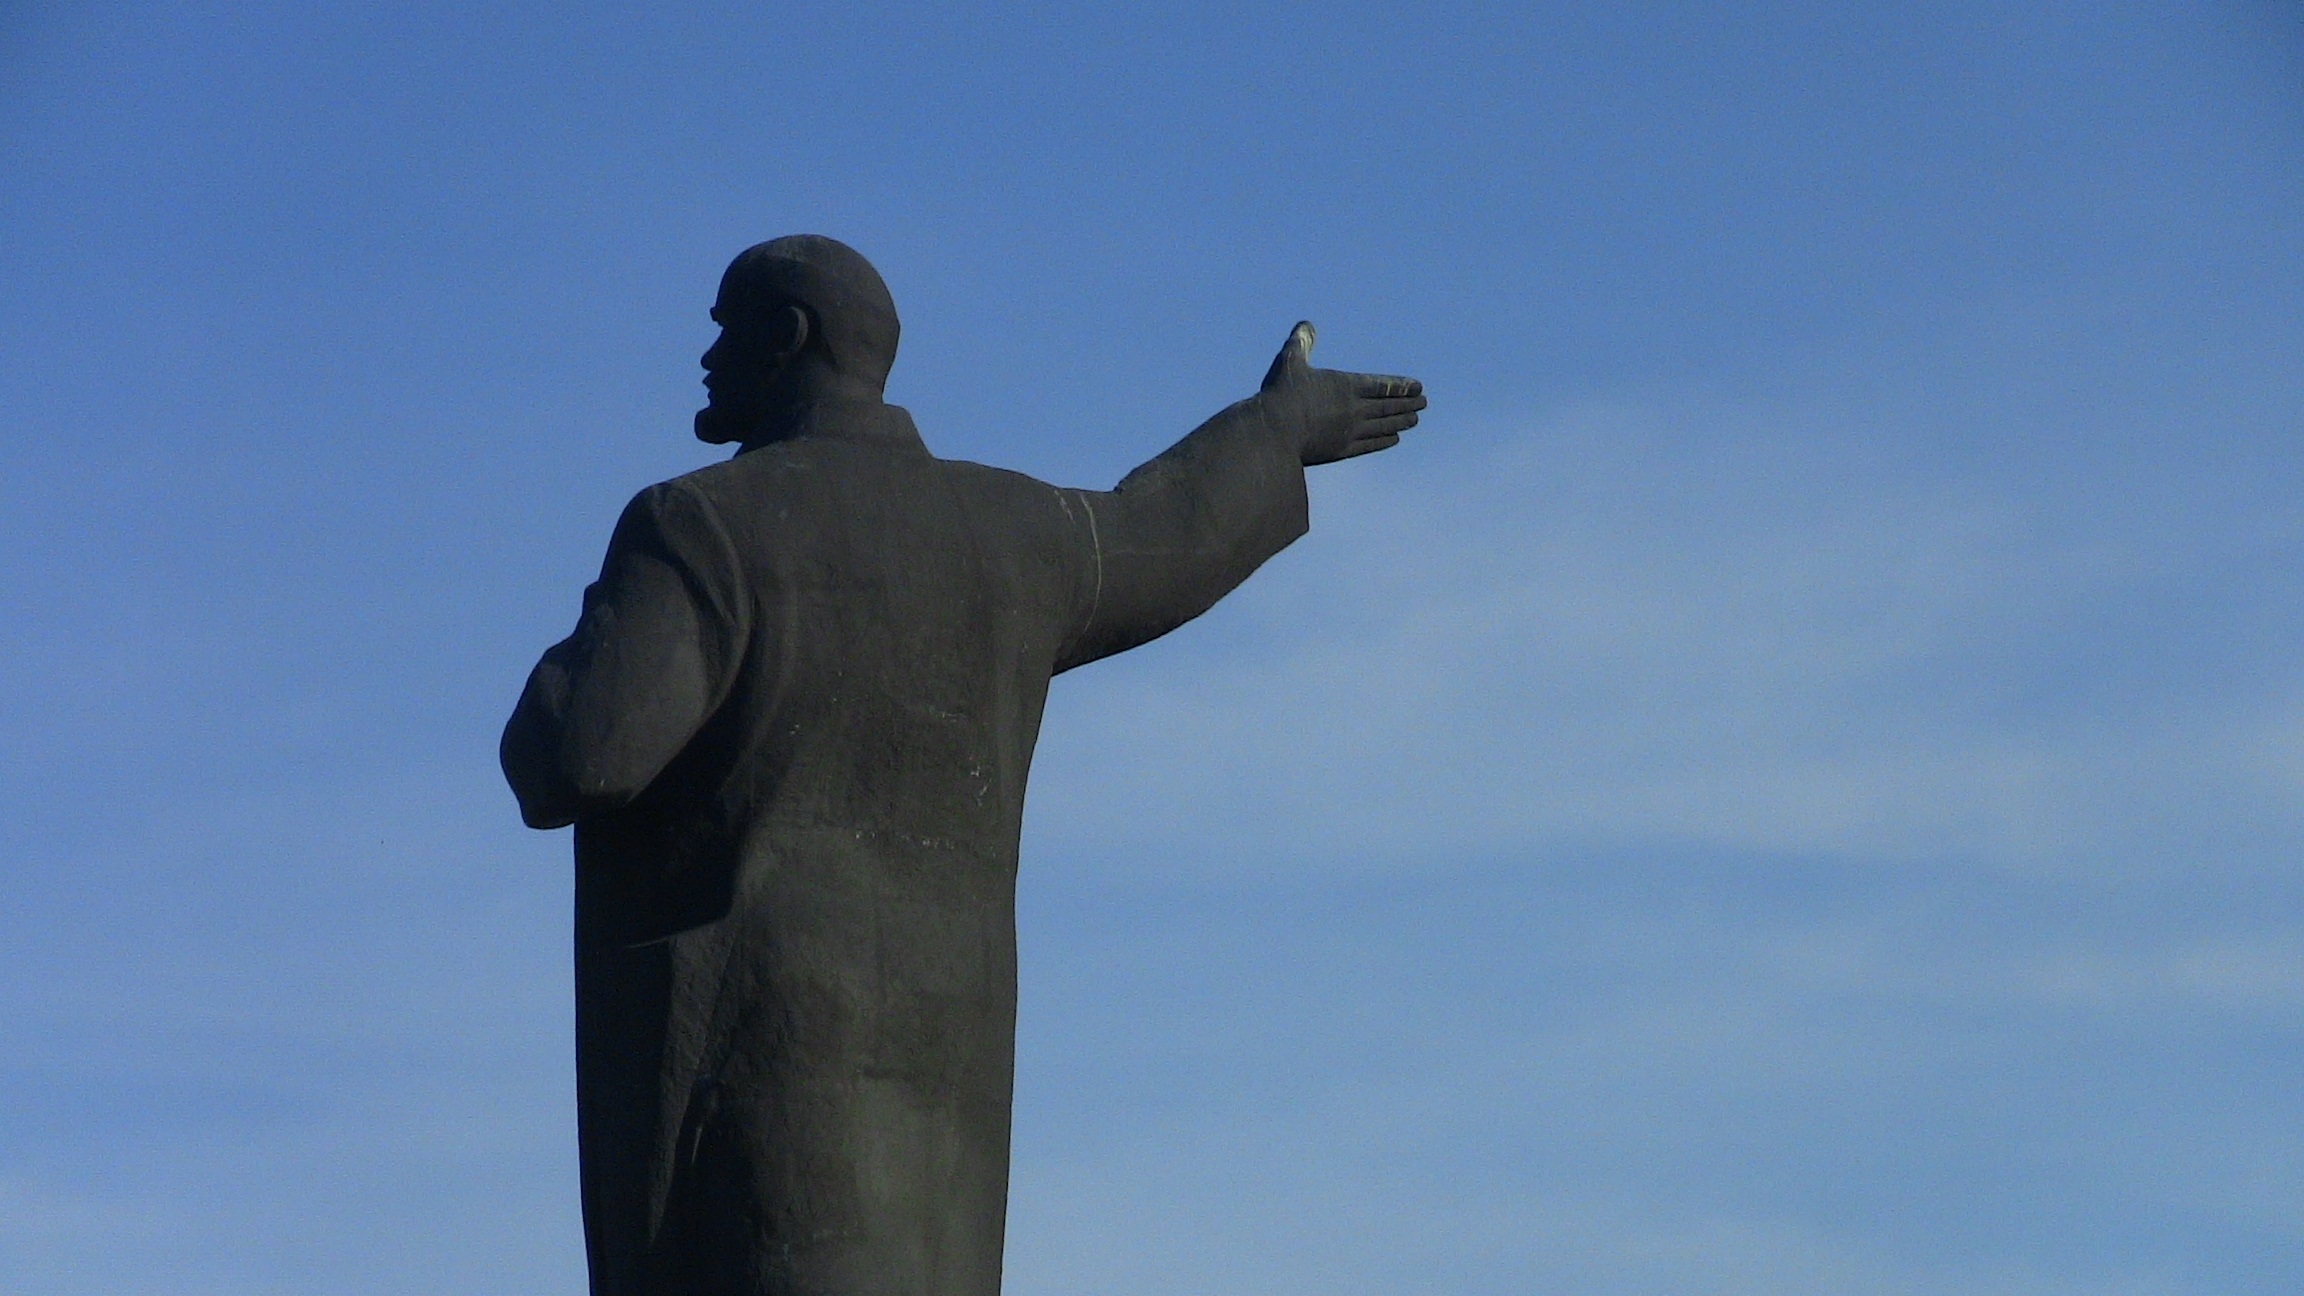 Владимир Ильич Ленин указывает на выход. Изображение из фотобанка